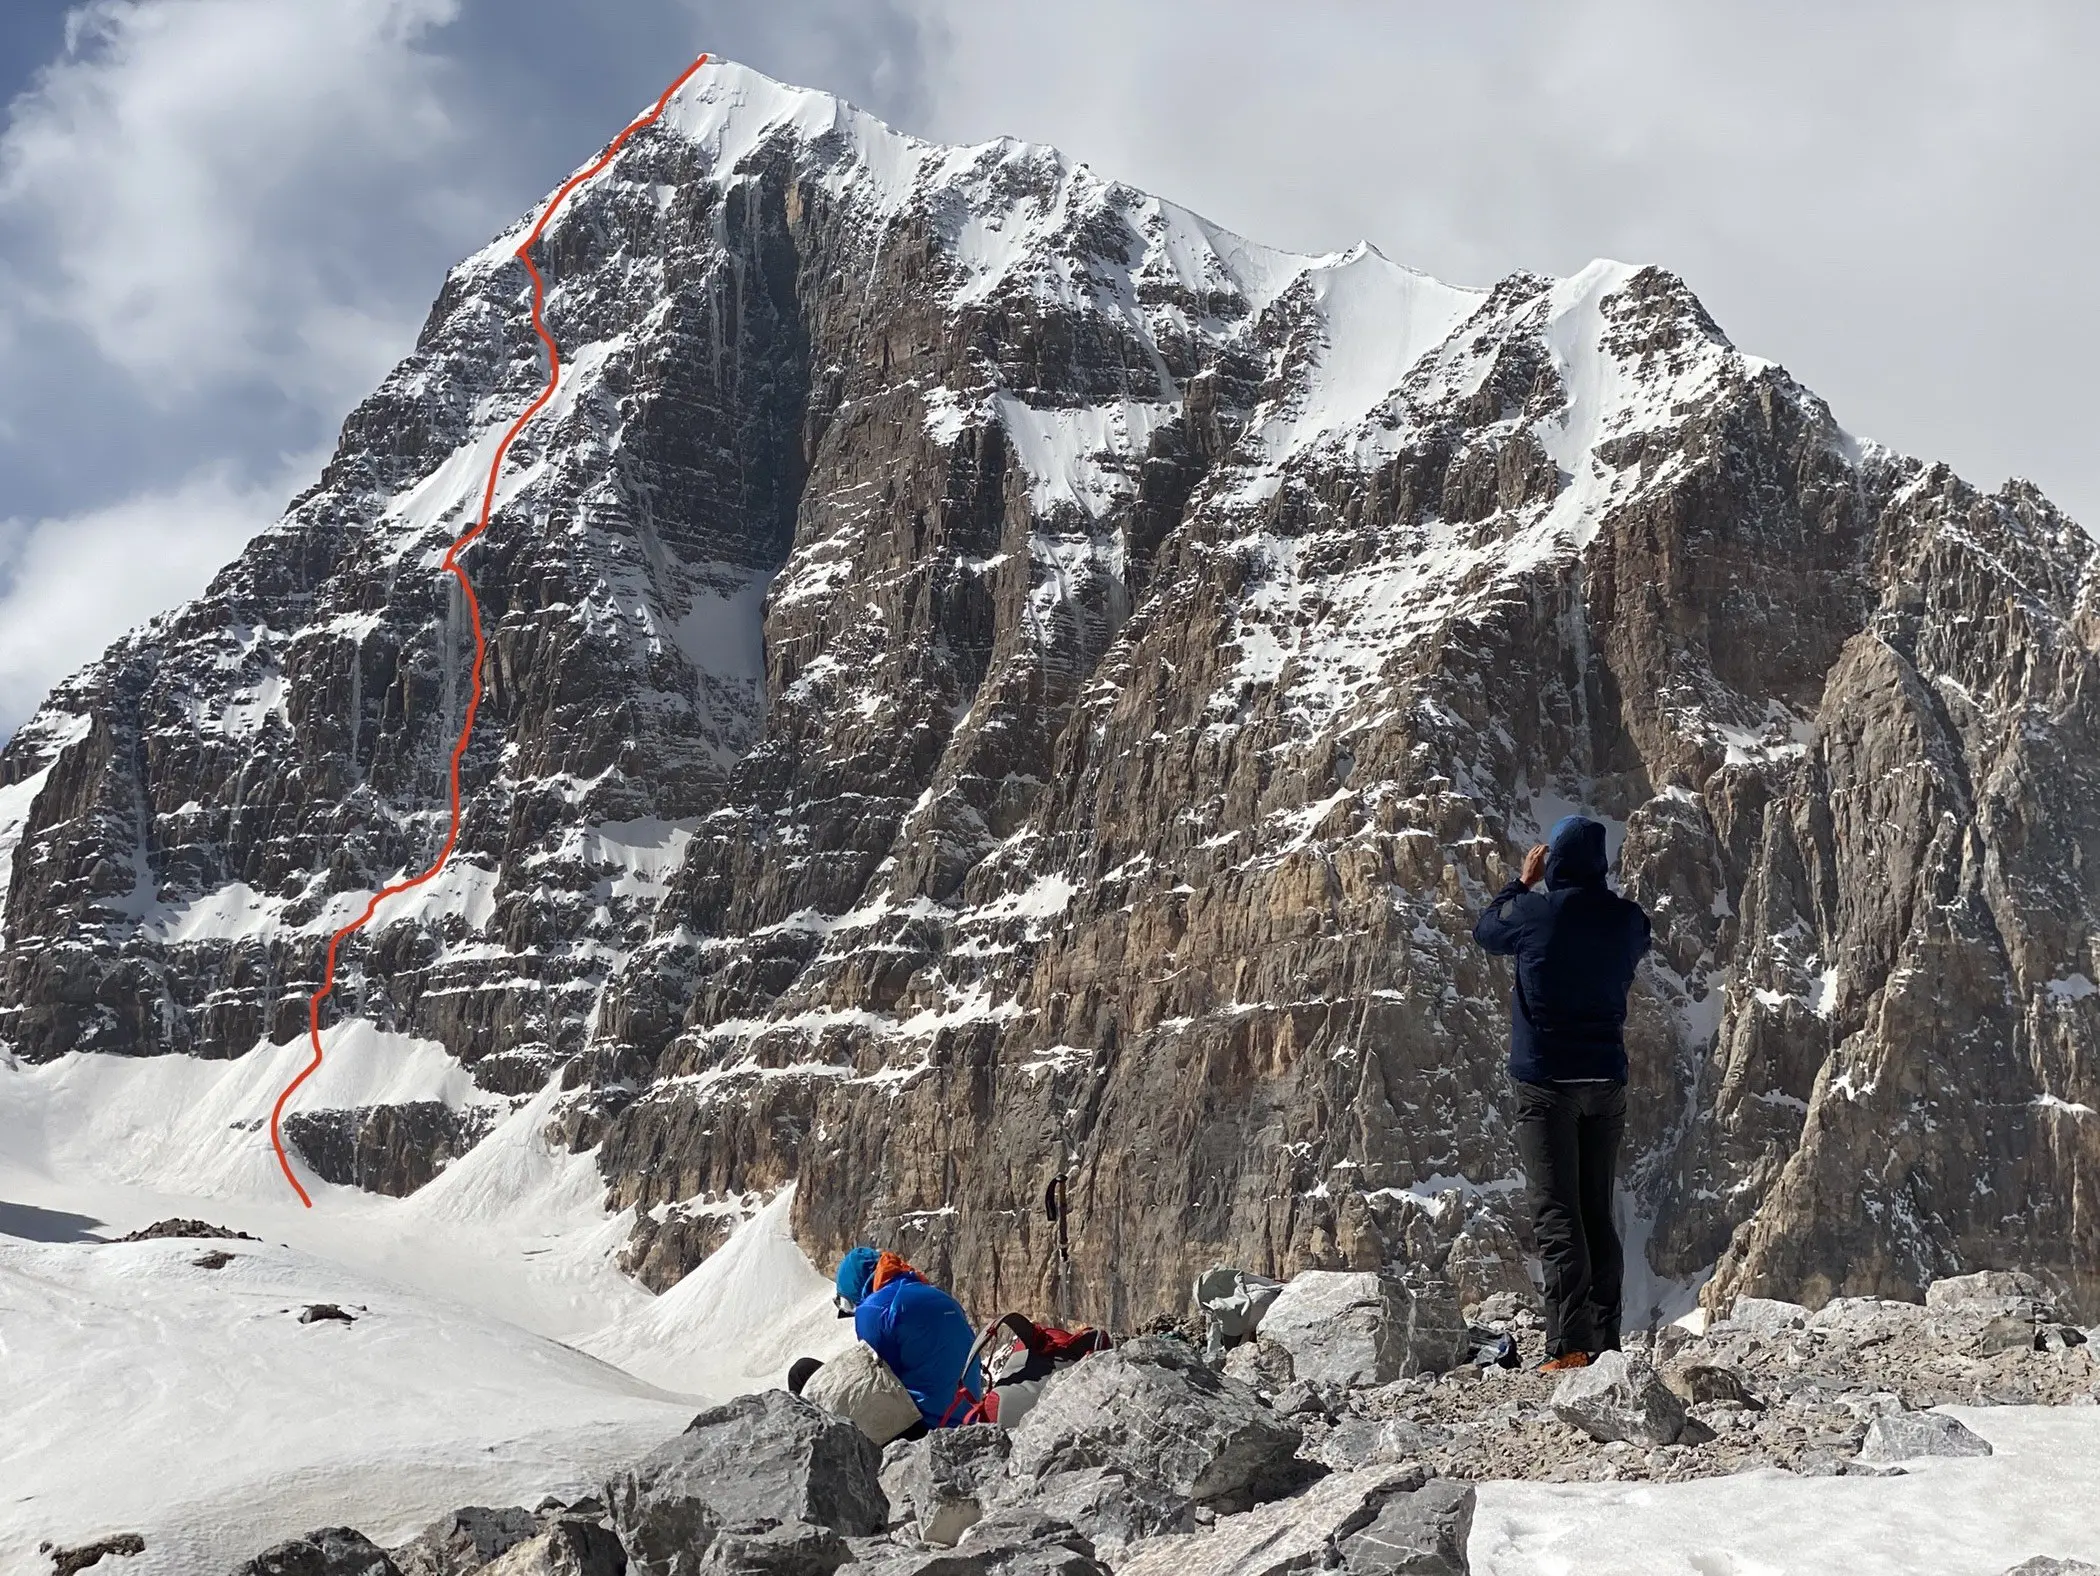 Маршрут Trophy Hunt (AI5+, M5, 1100м) на північно-східній стороні Піка Альпініст (5482 м) у Киргизстані. Фото Jared Vilhauer